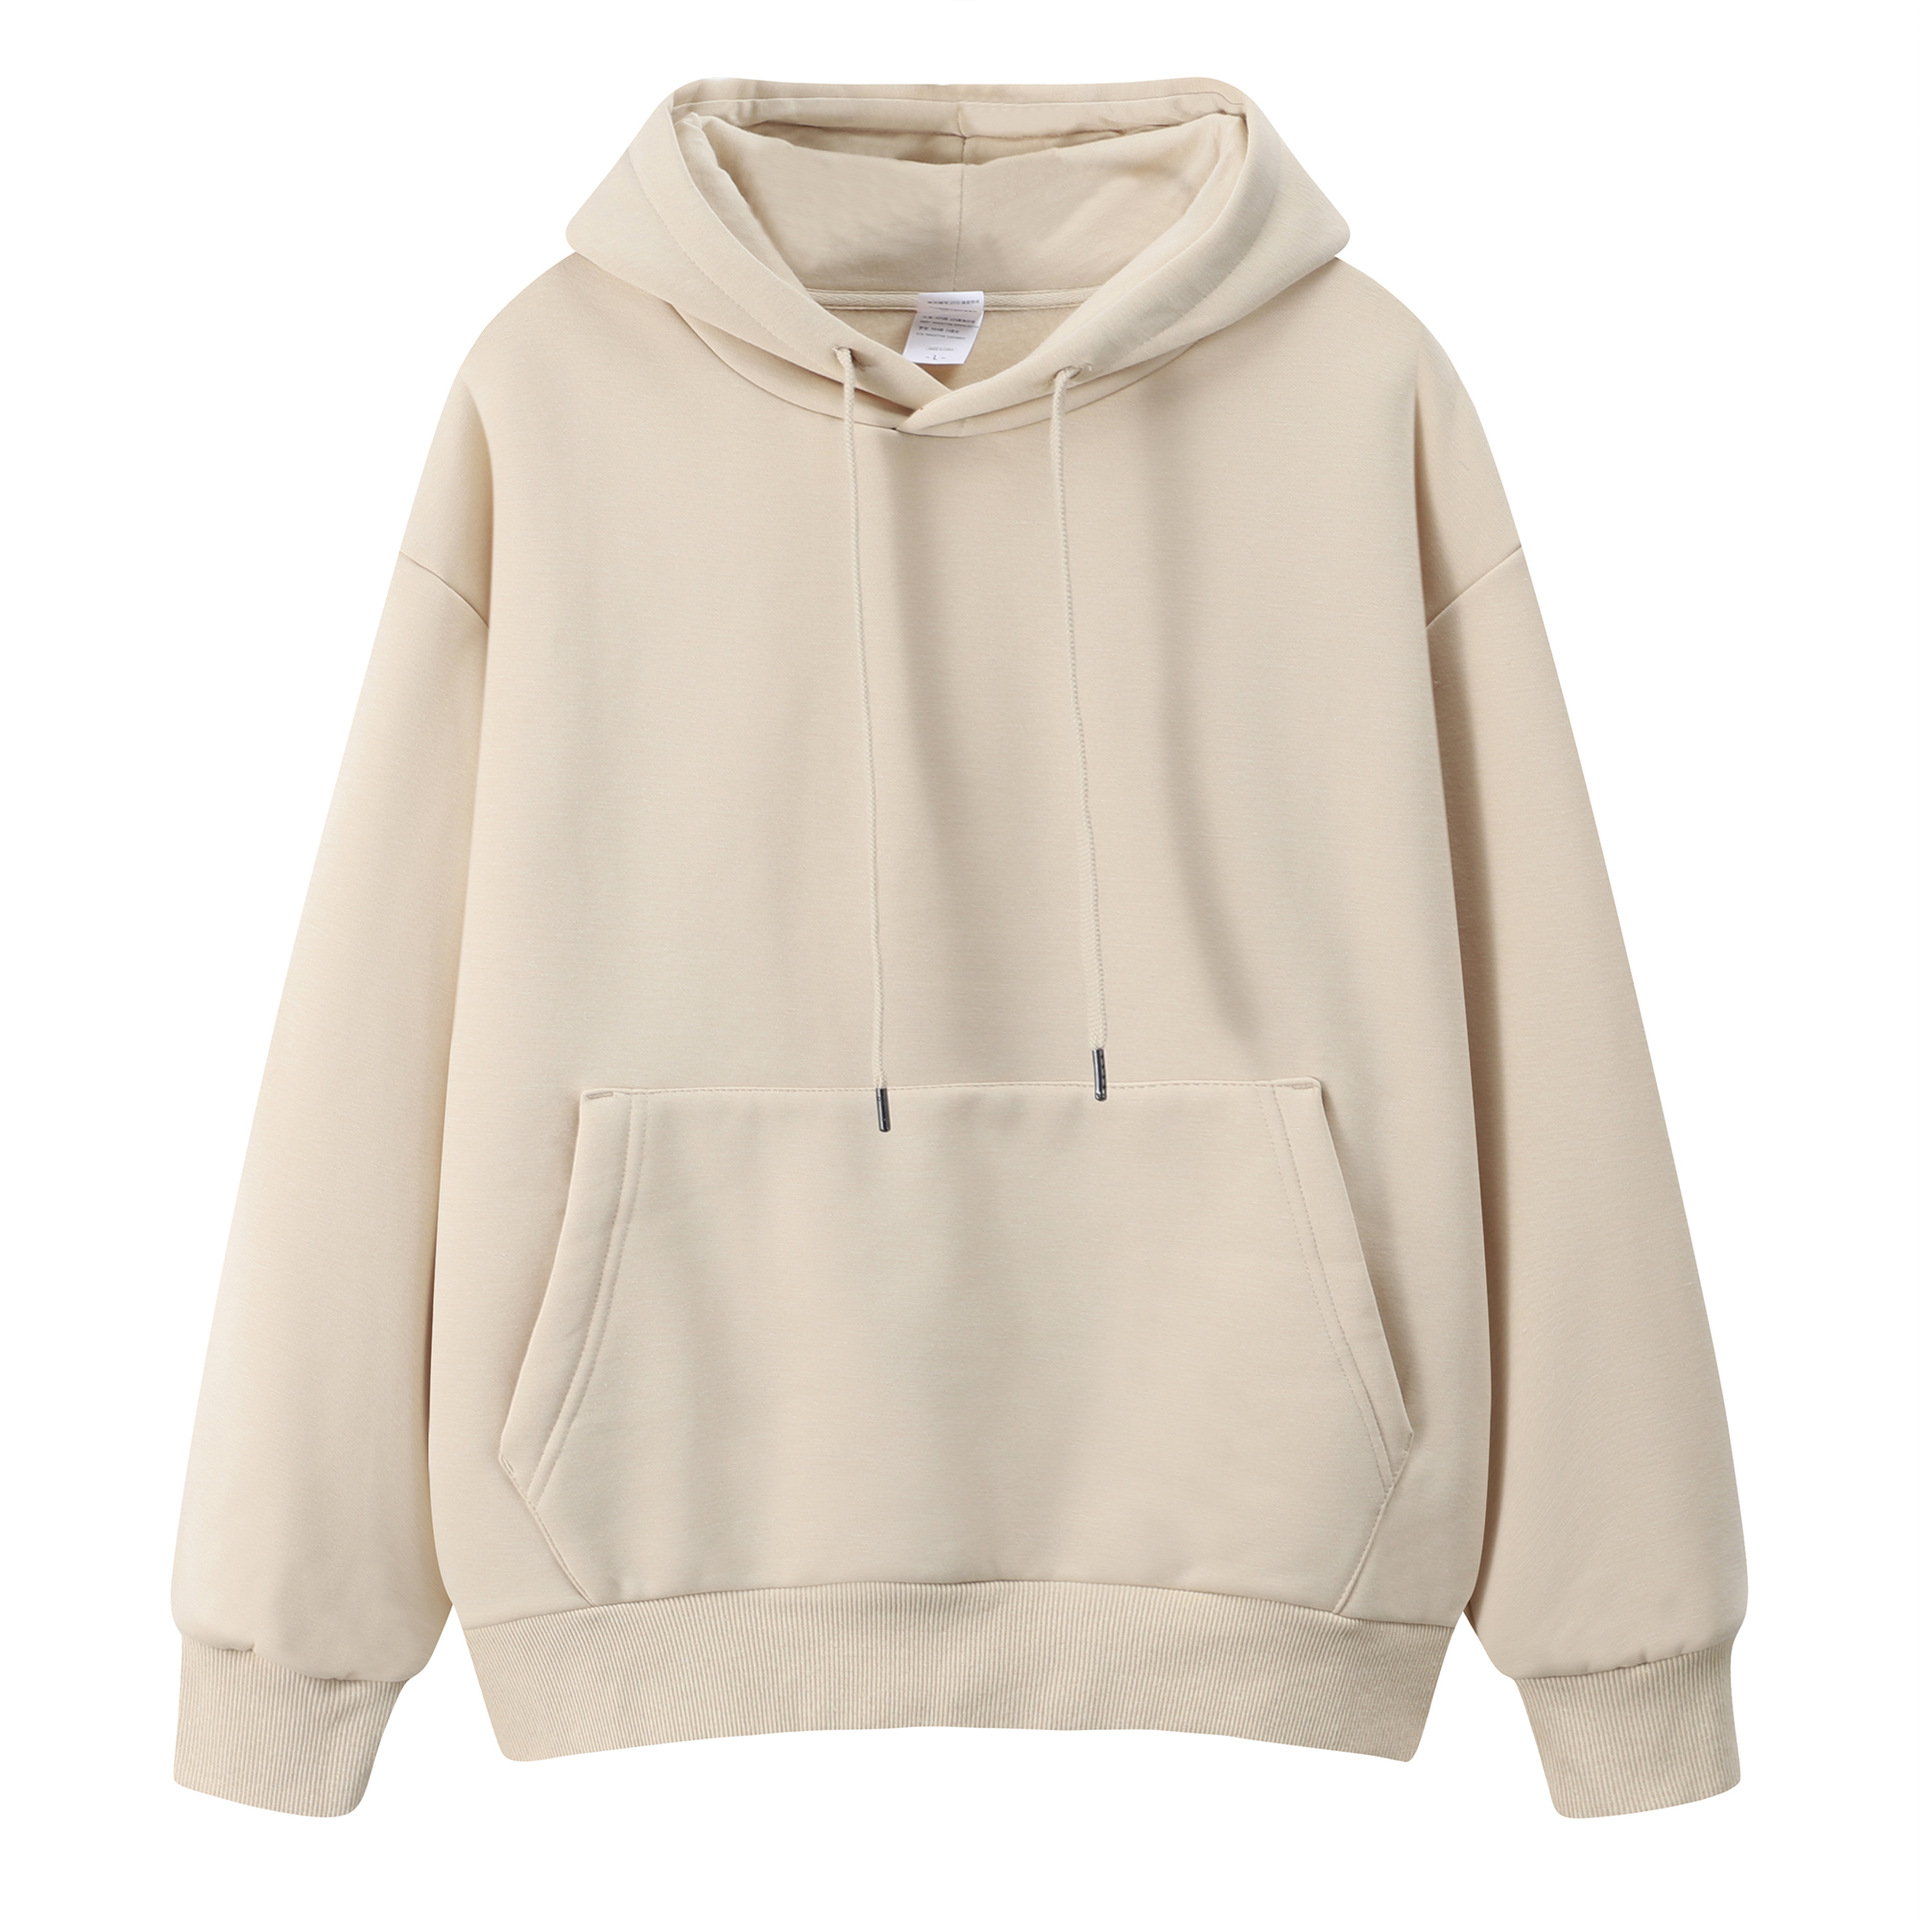 blank zip up hoodies wholesale